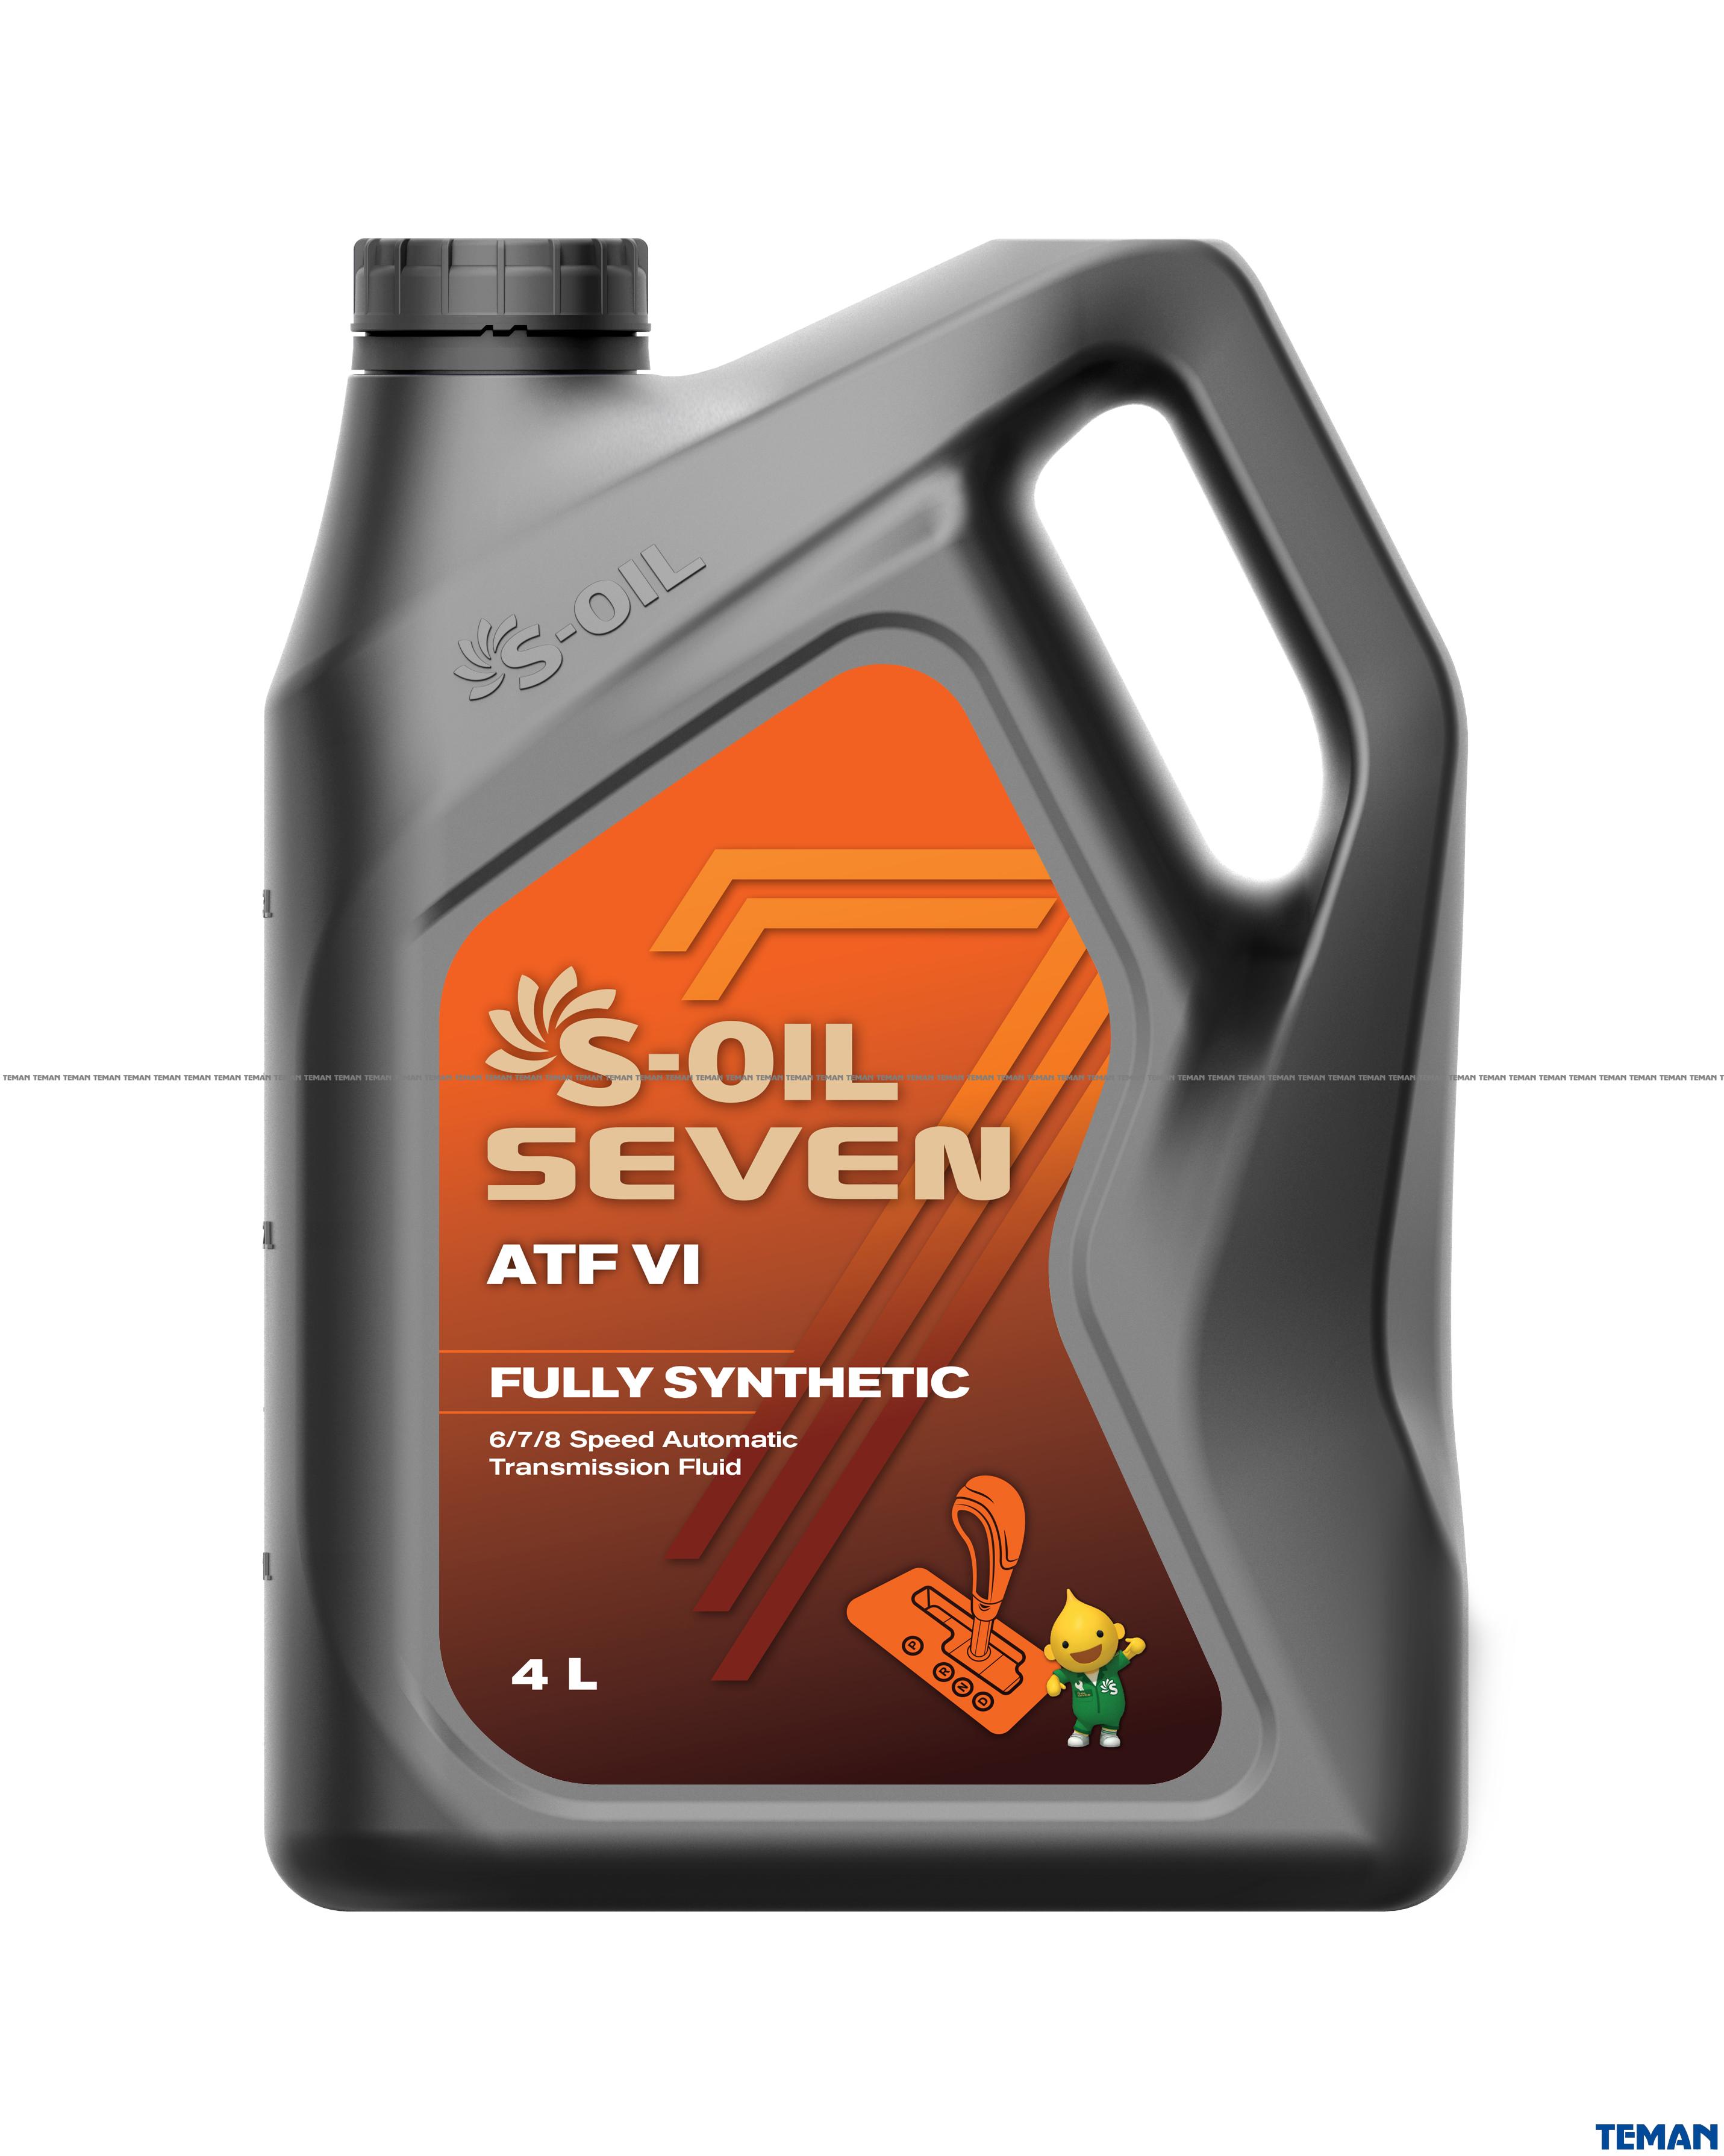  Купить Трансмиссионное масло 7 ATF VI 4лS-OIL SNATFVI4   